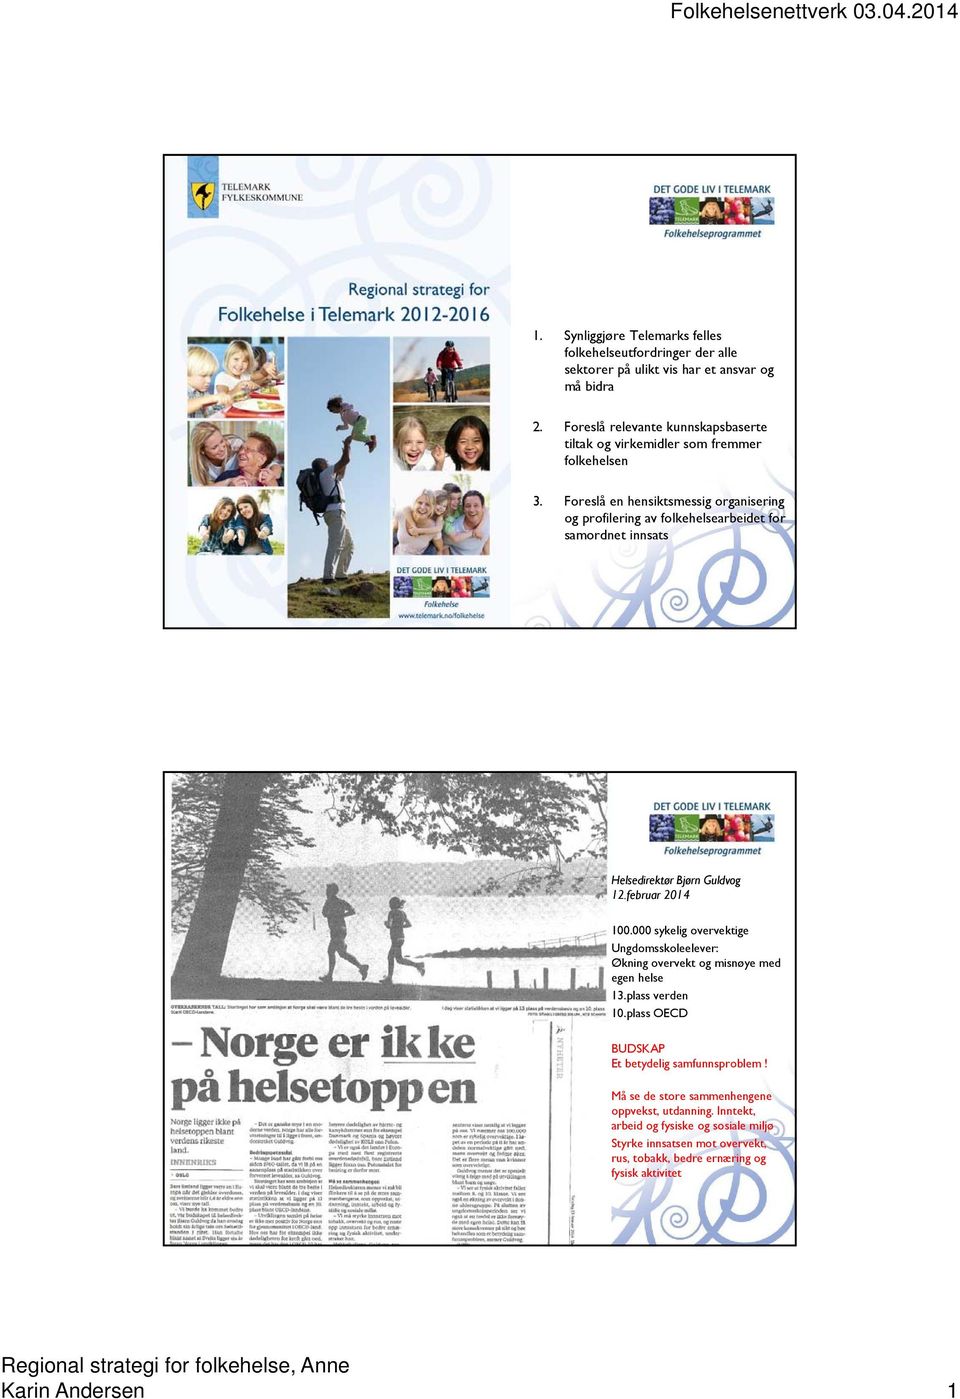 Foreslå en hensiktsmessig organisering og profilering av folkehelsearbeidet for samordnet innsats Helsedirektør Bjørn Guldvog 12.februar 2014 100.